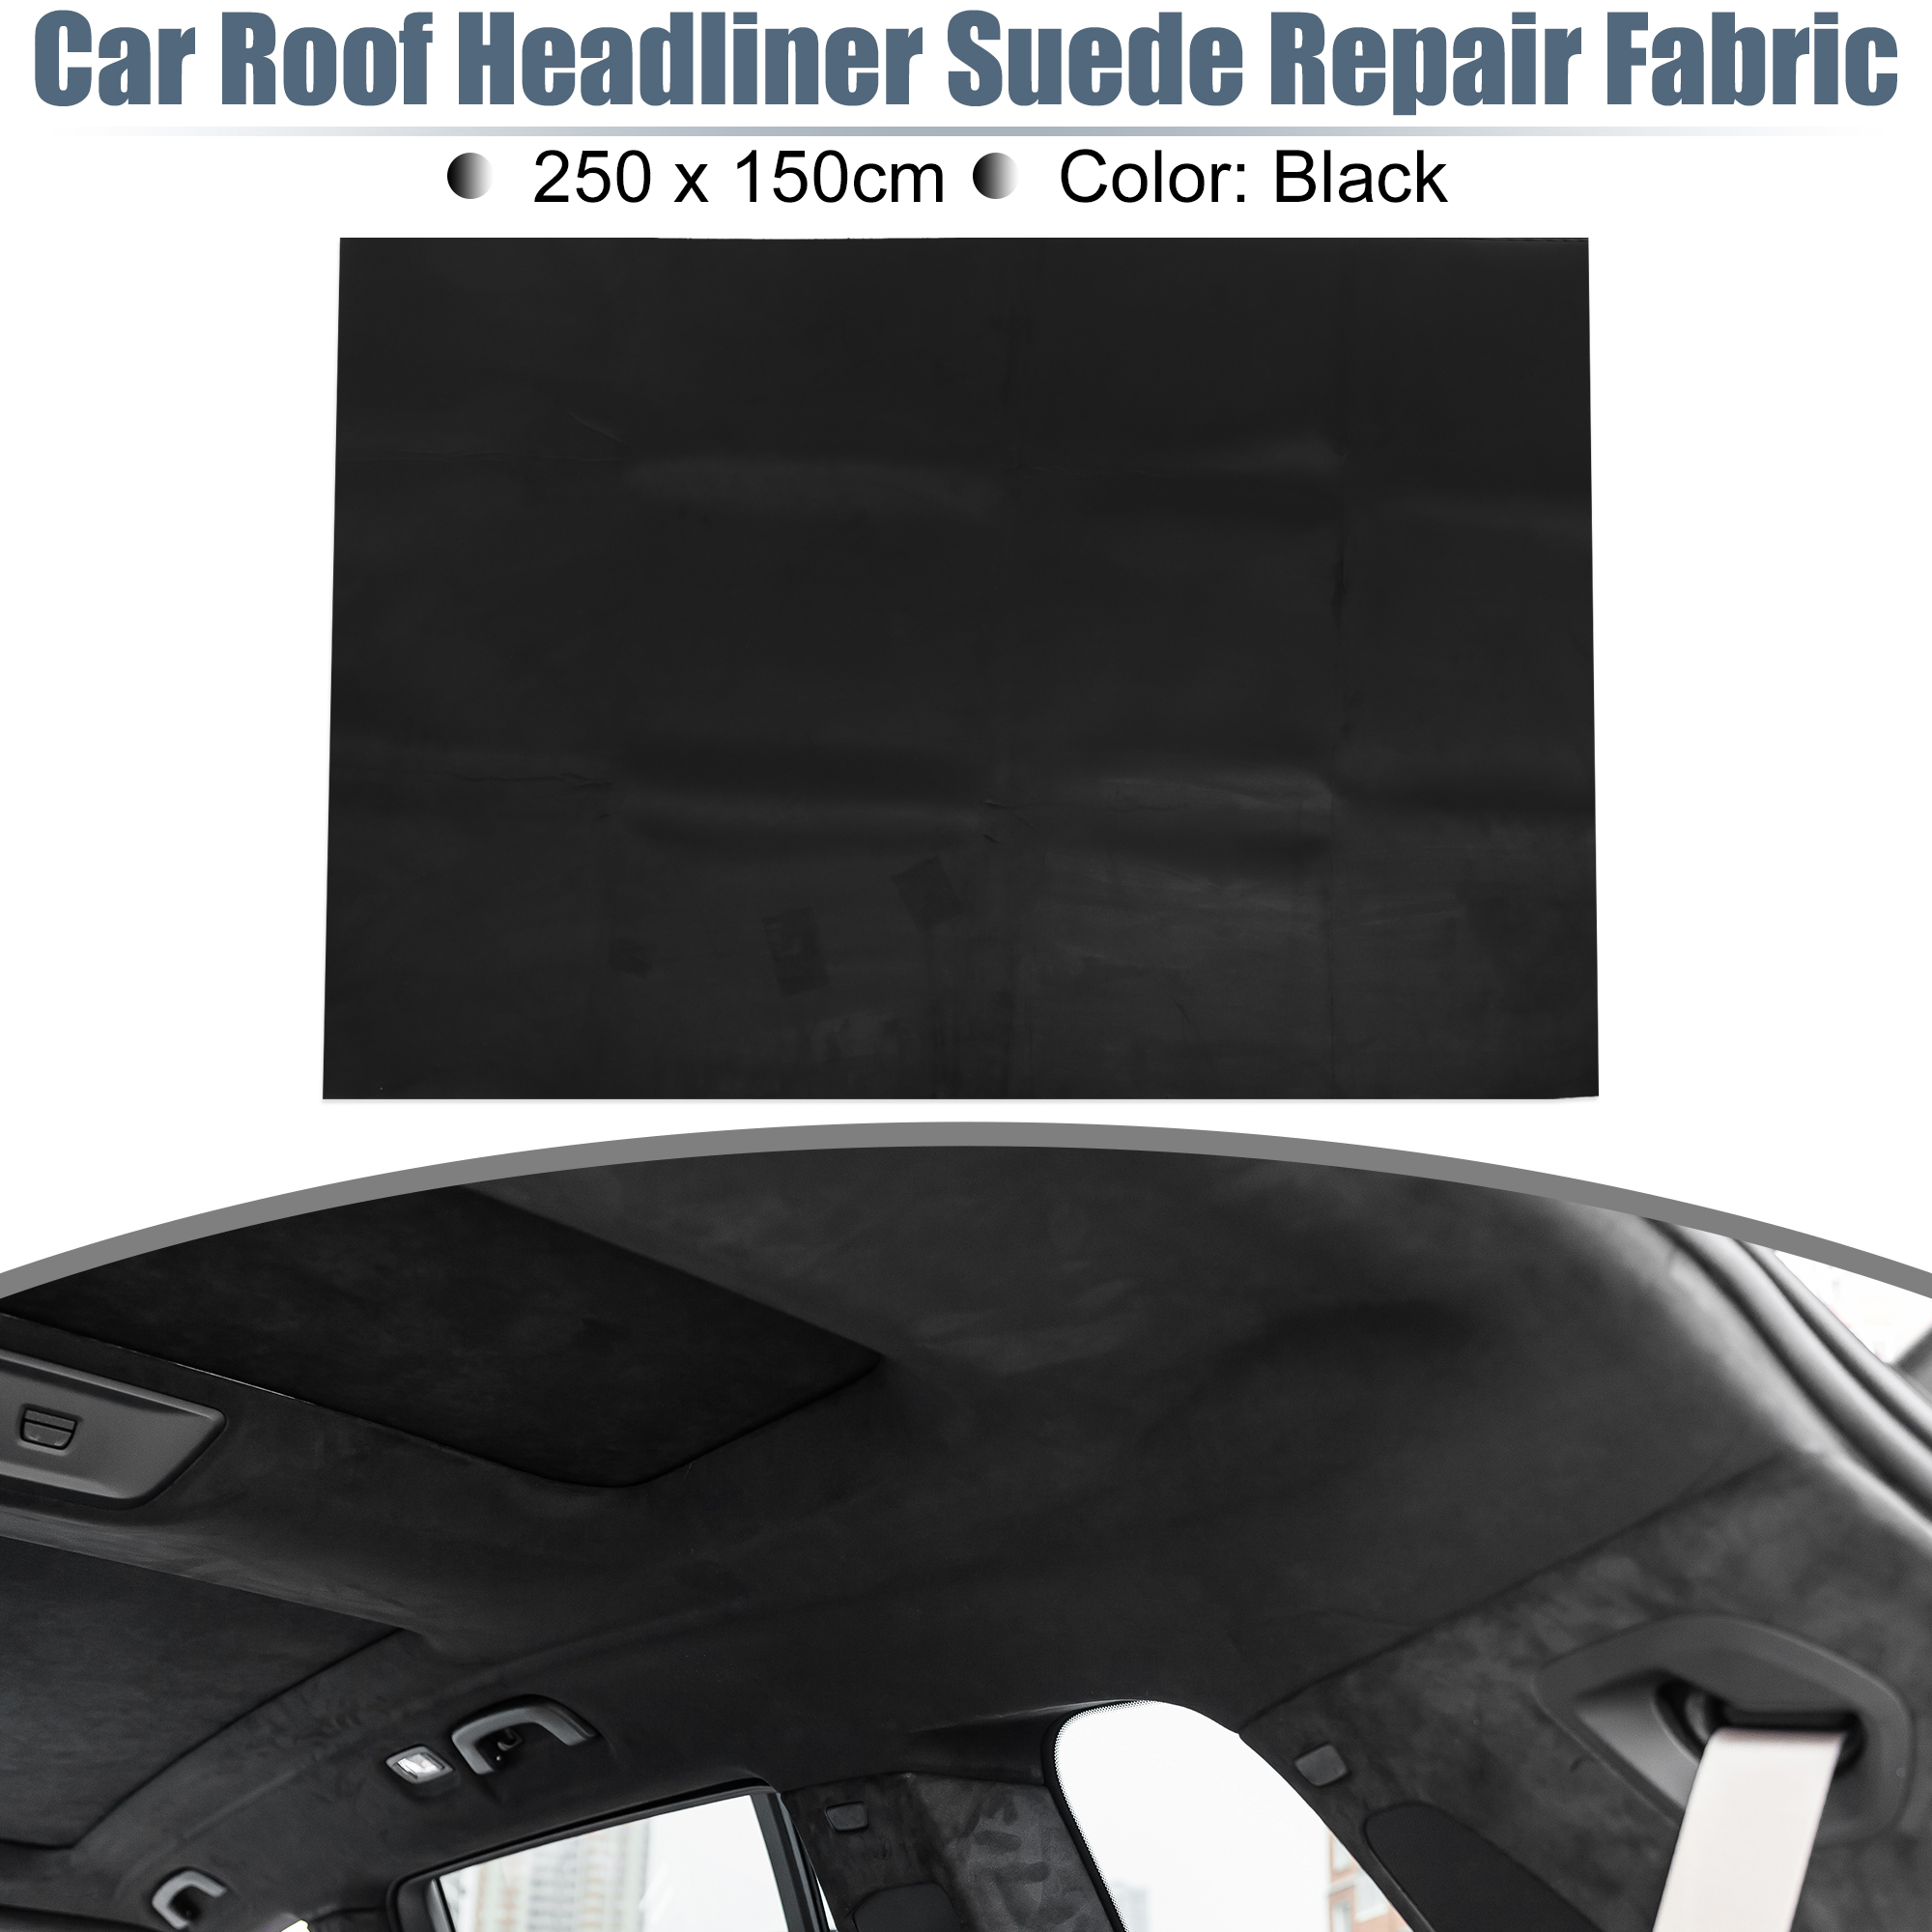 Unique Bargains Suede Headliner Fabric 98x60 Foam Backed for Car Interior  Roof Repair Black